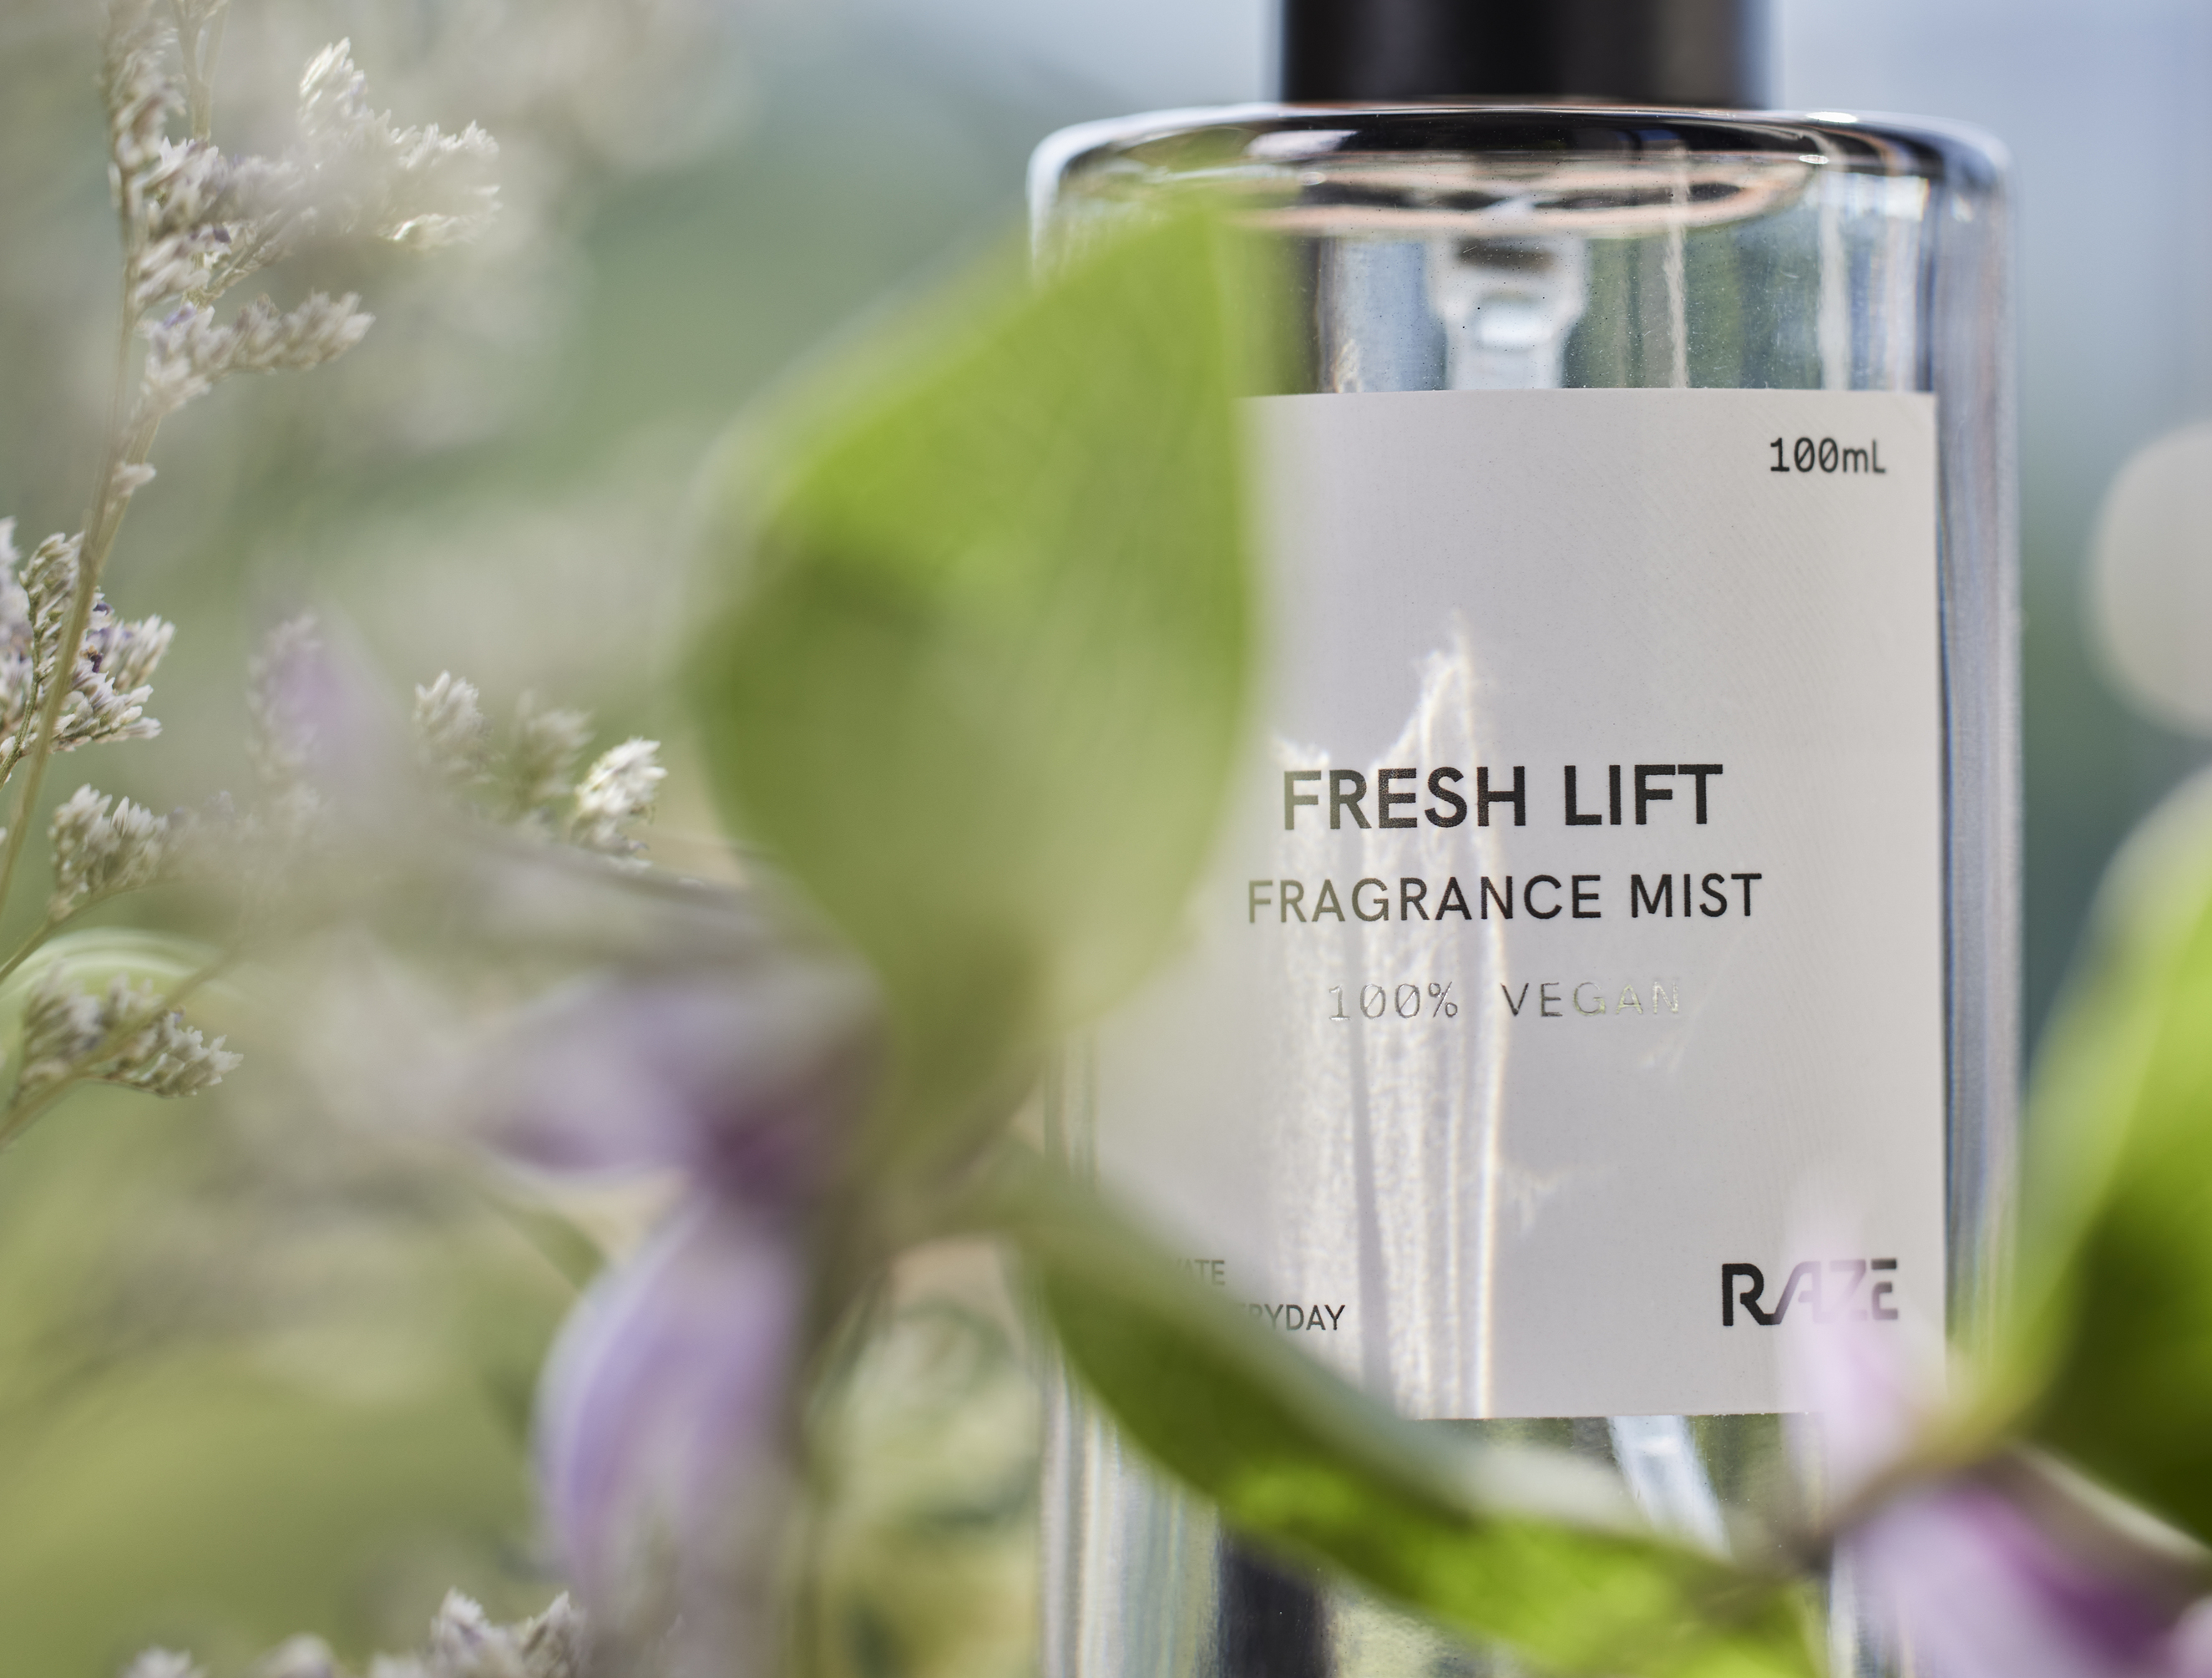 Fresh lift Fragrance Mist 100mL